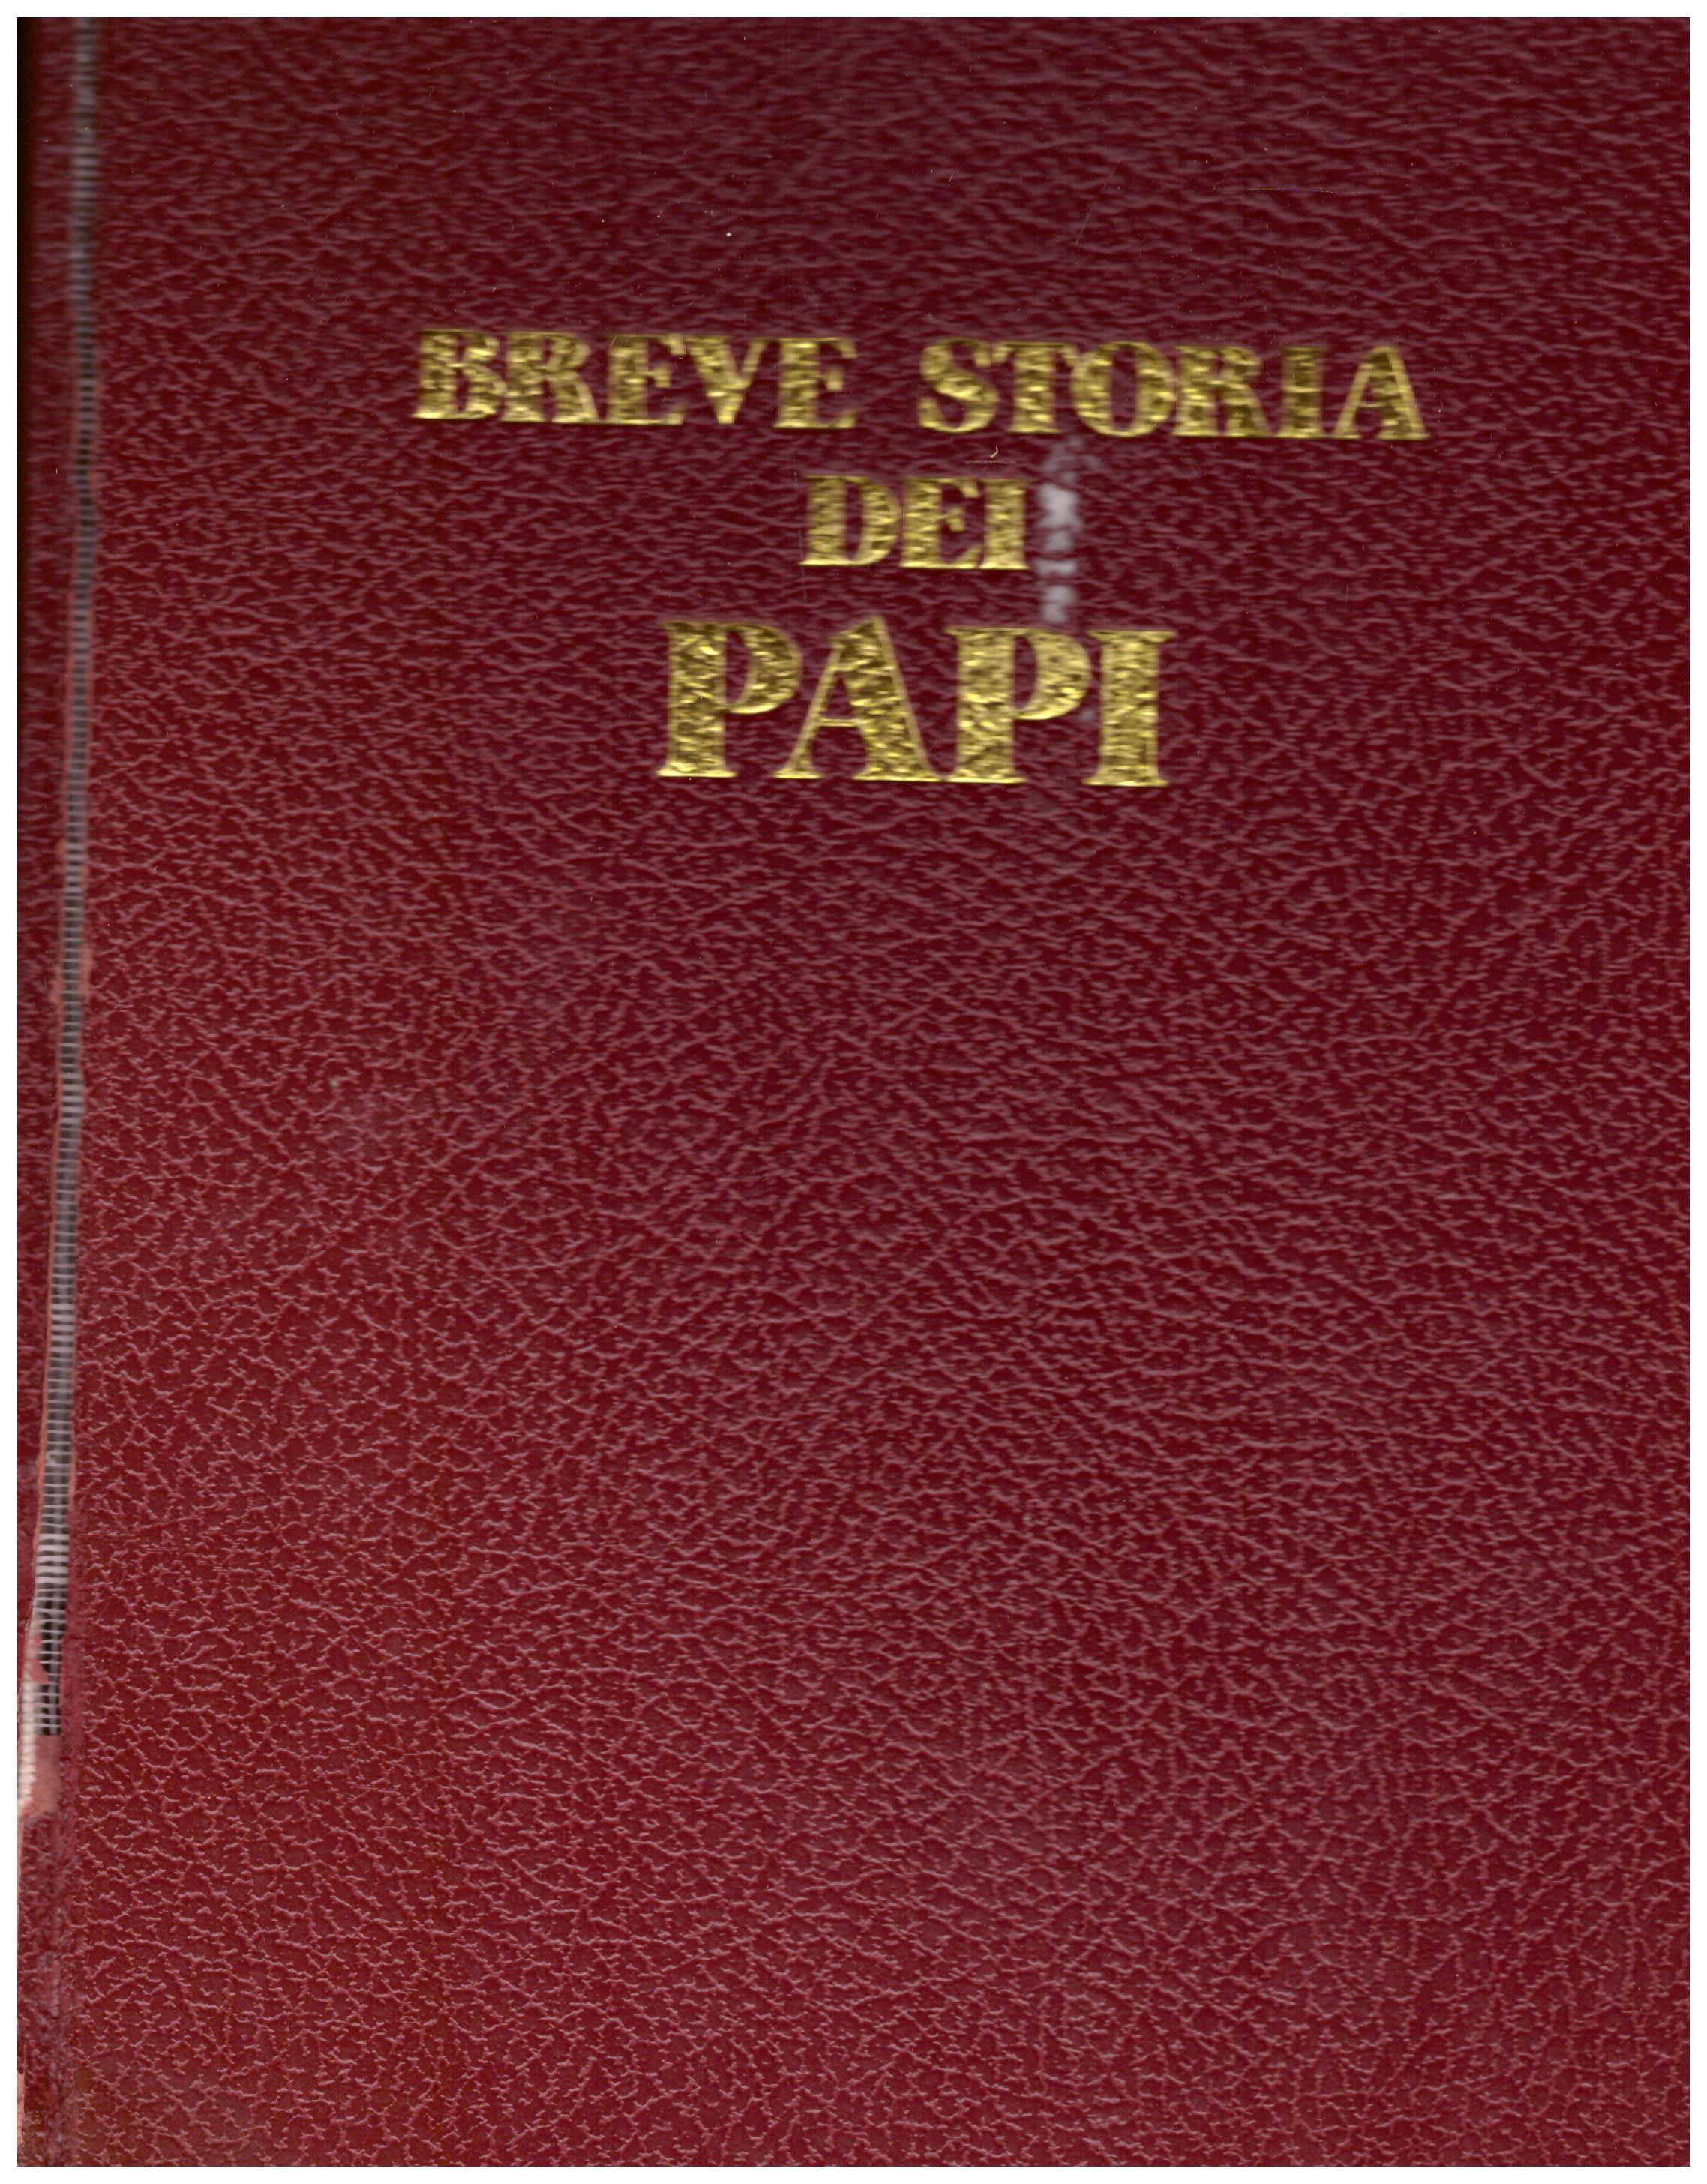 Titolo: Breve storia dei papi Autore : AA.VV. Editore: ORL, Vicenza 1975